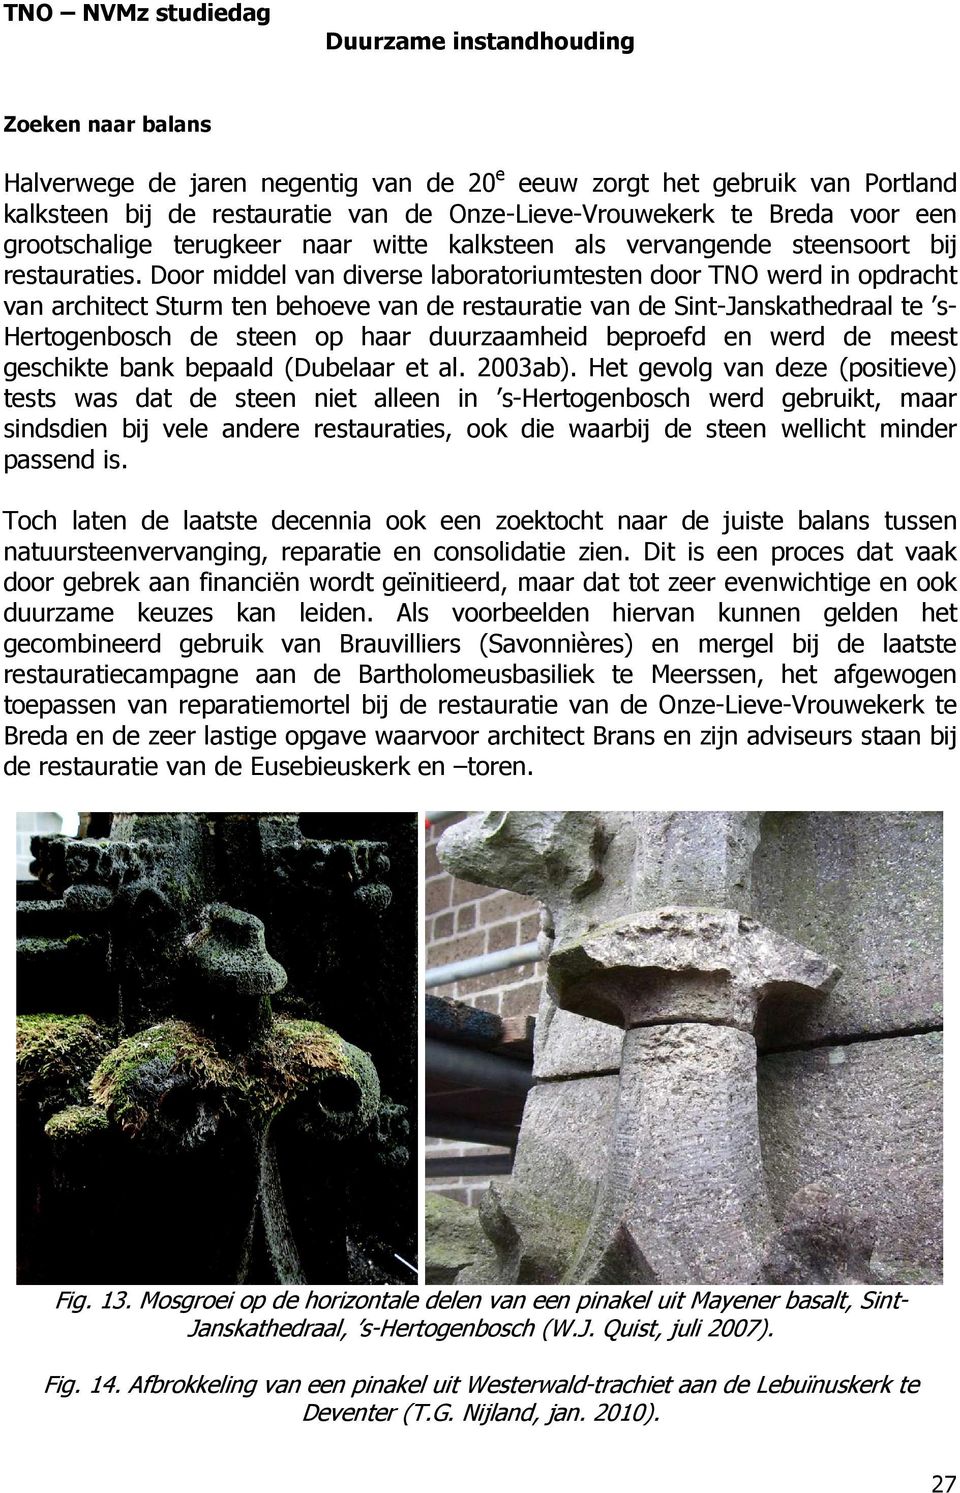 Door middel van diverse laboratoriumtesten door TNO werd in opdracht van architect Sturm ten behoeve van de restauratie van de Sint-Janskathedraal te s- Hertogenbosch de steen op haar duurzaamheid